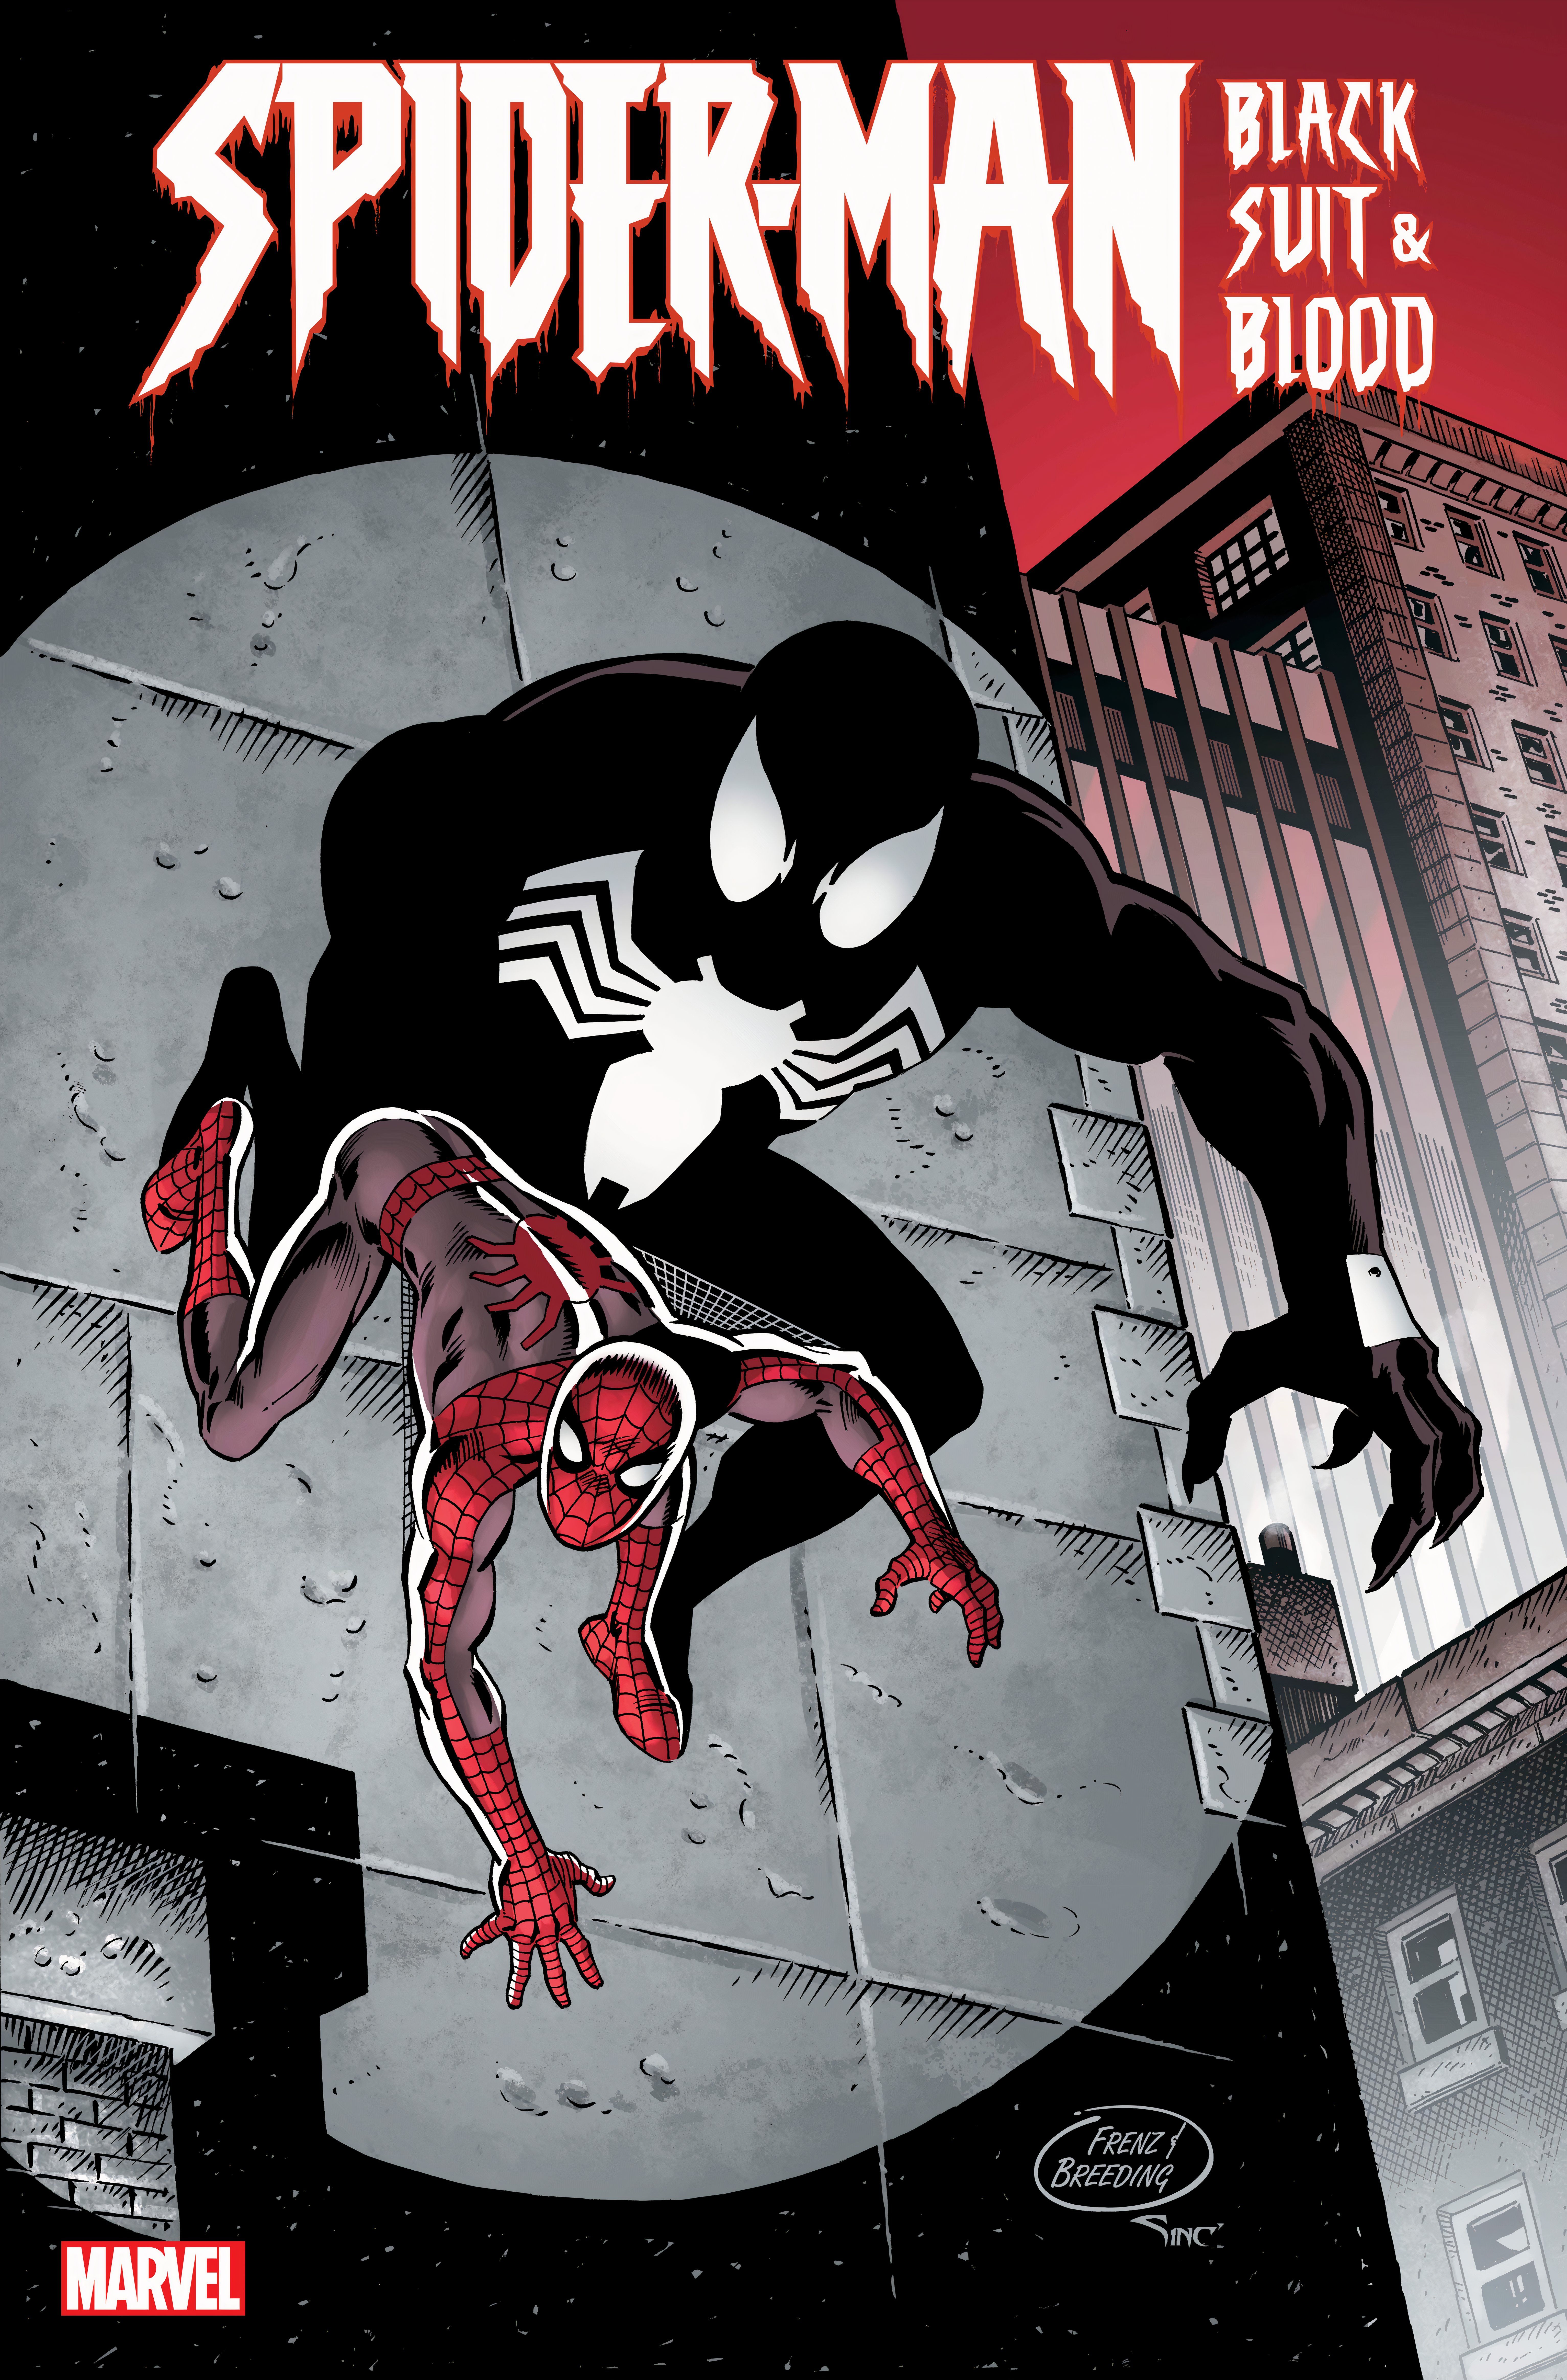 Человек-паук возвращается к эпохе своего черного костюма в новом сериале Marvel